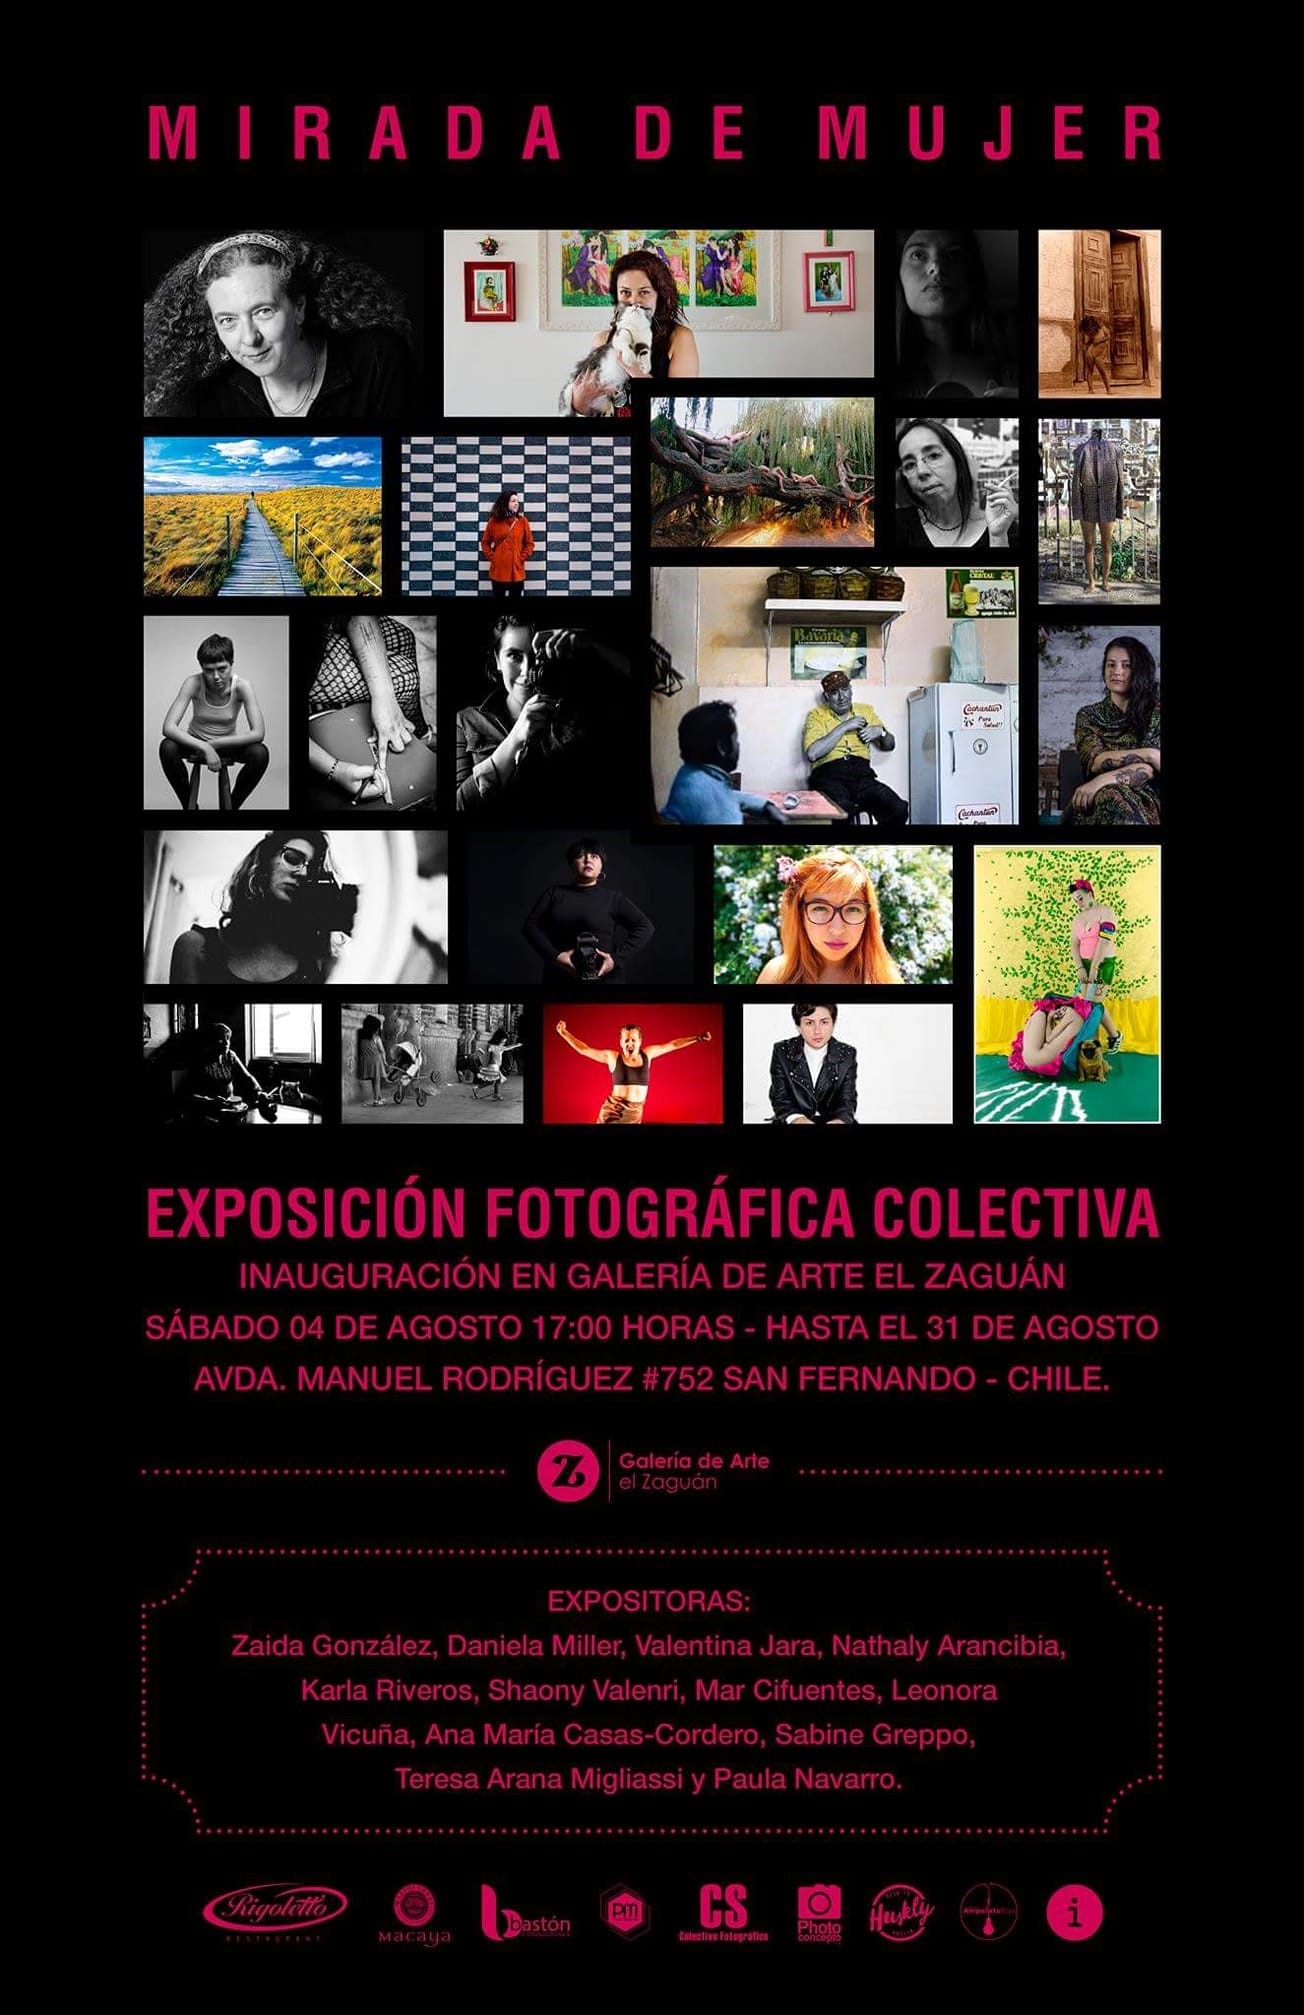 Sábado 04 de Agosto 2018- EXPOSICION FOTOGRÁFICA COLECTIVA